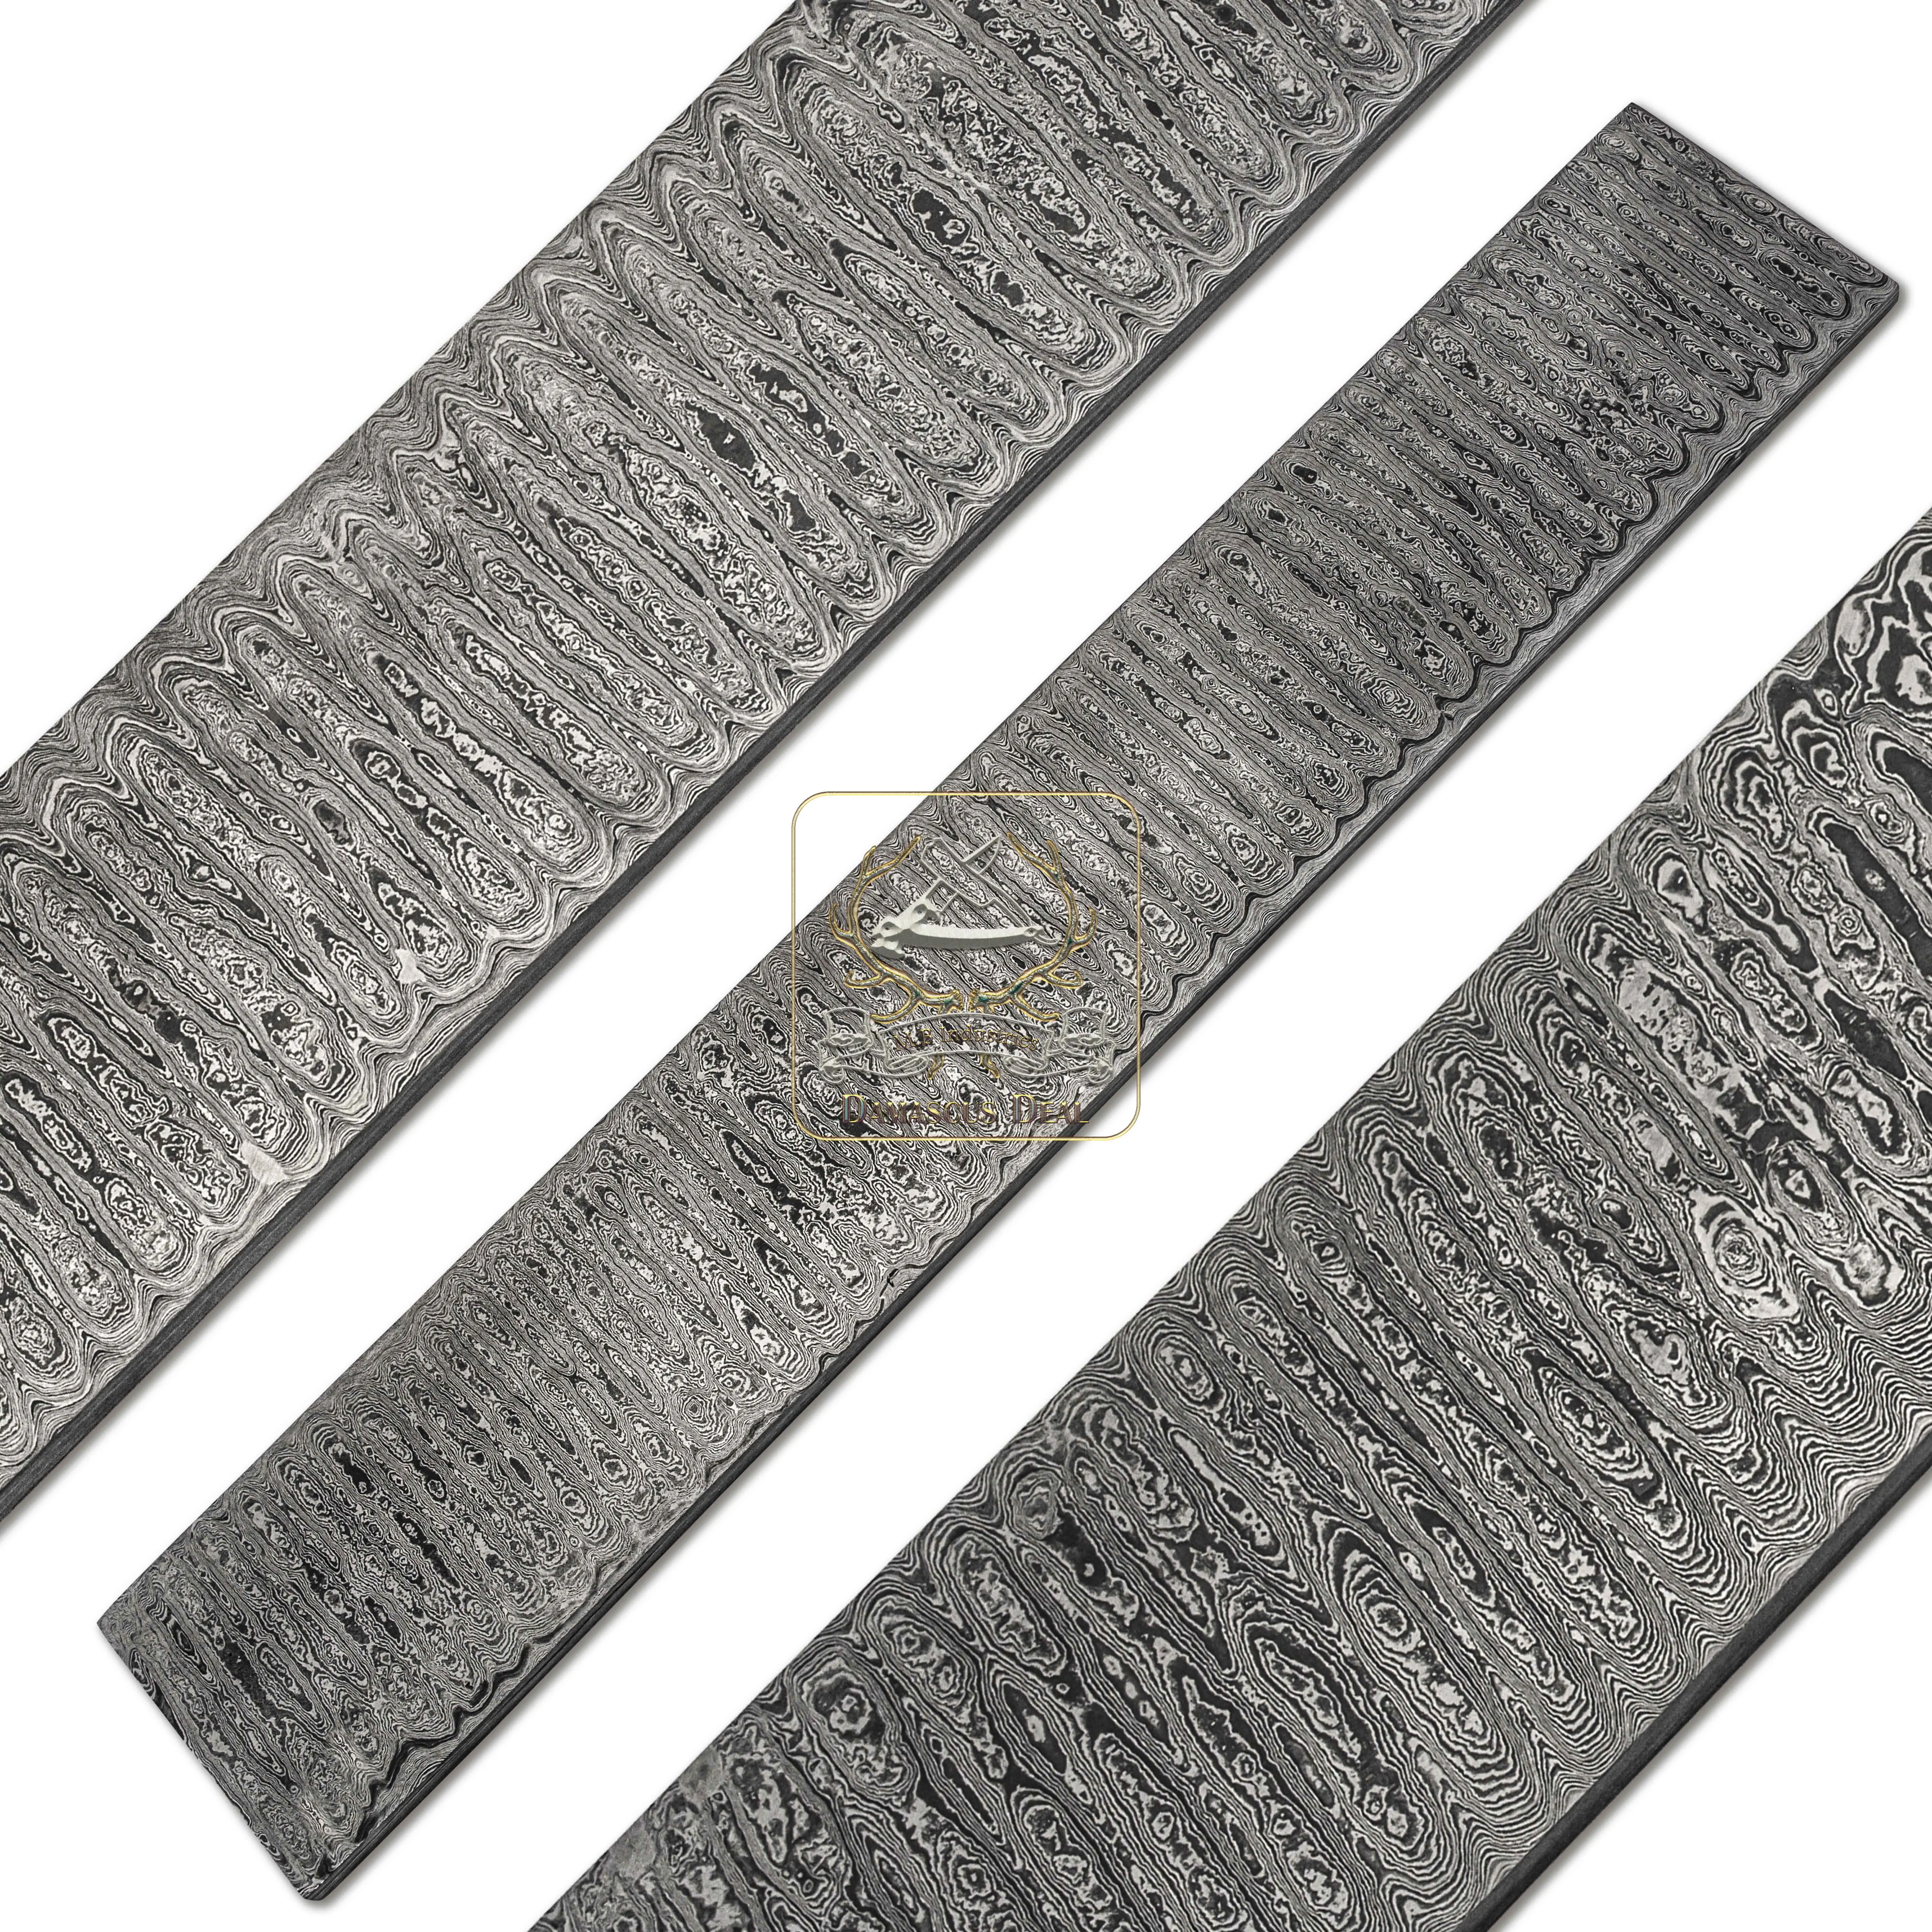 Damascus Steel Billet Ladder Pattern DD-Ladder-304 for Knife Making Hand Forged Carbon Steel Hardness 58-62 HRC Billet